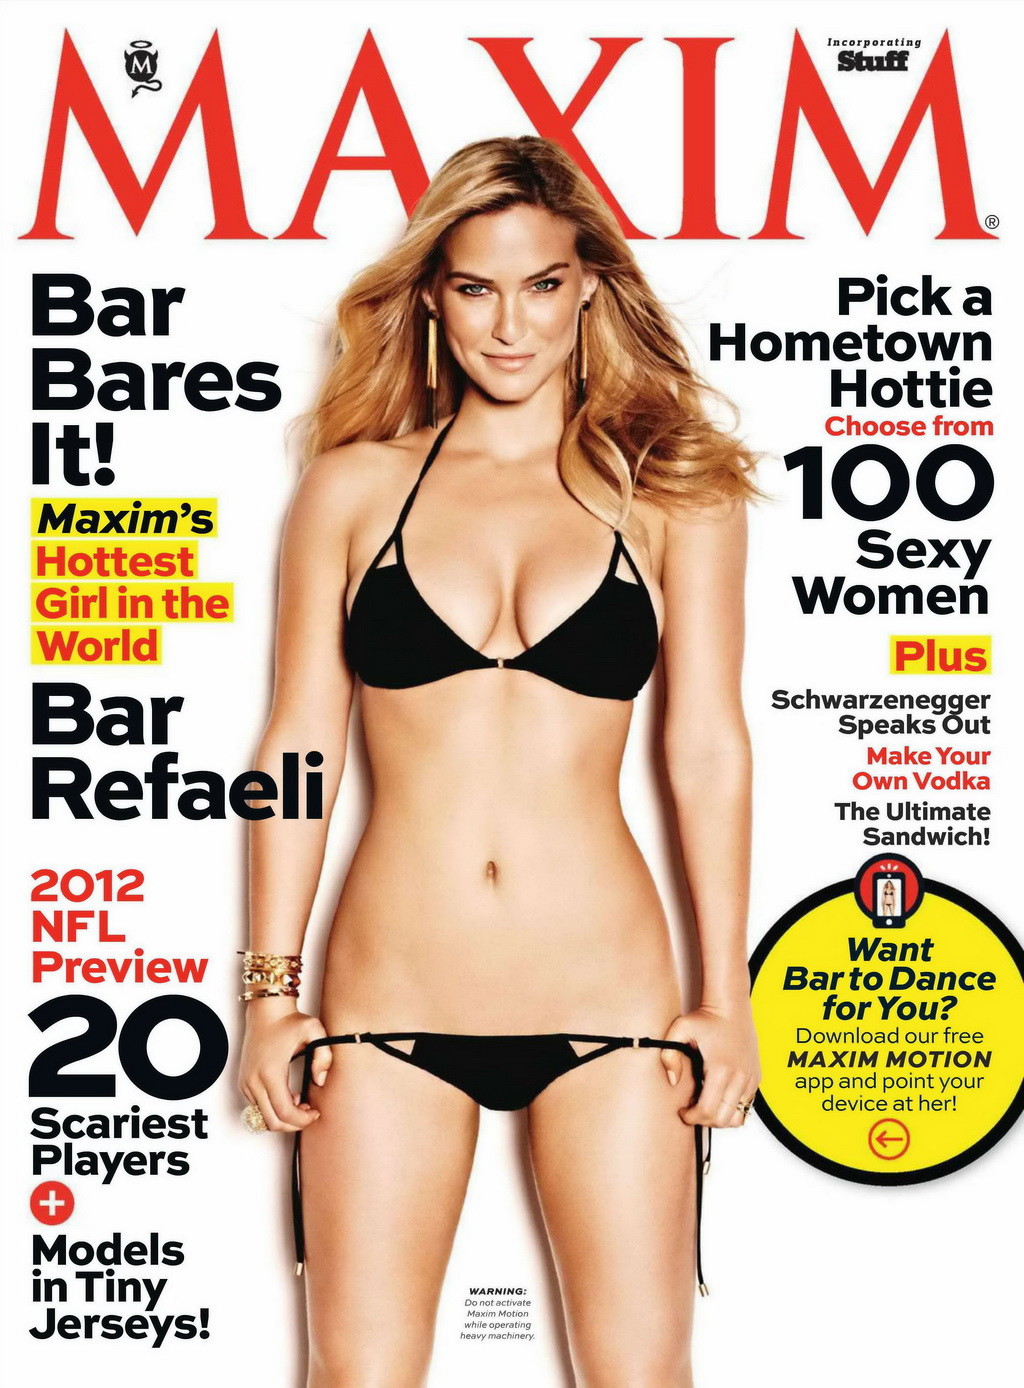 Bar refaeli desnuda pero escondida en los nuevos números de la revista maxim y elle france
 #75255501